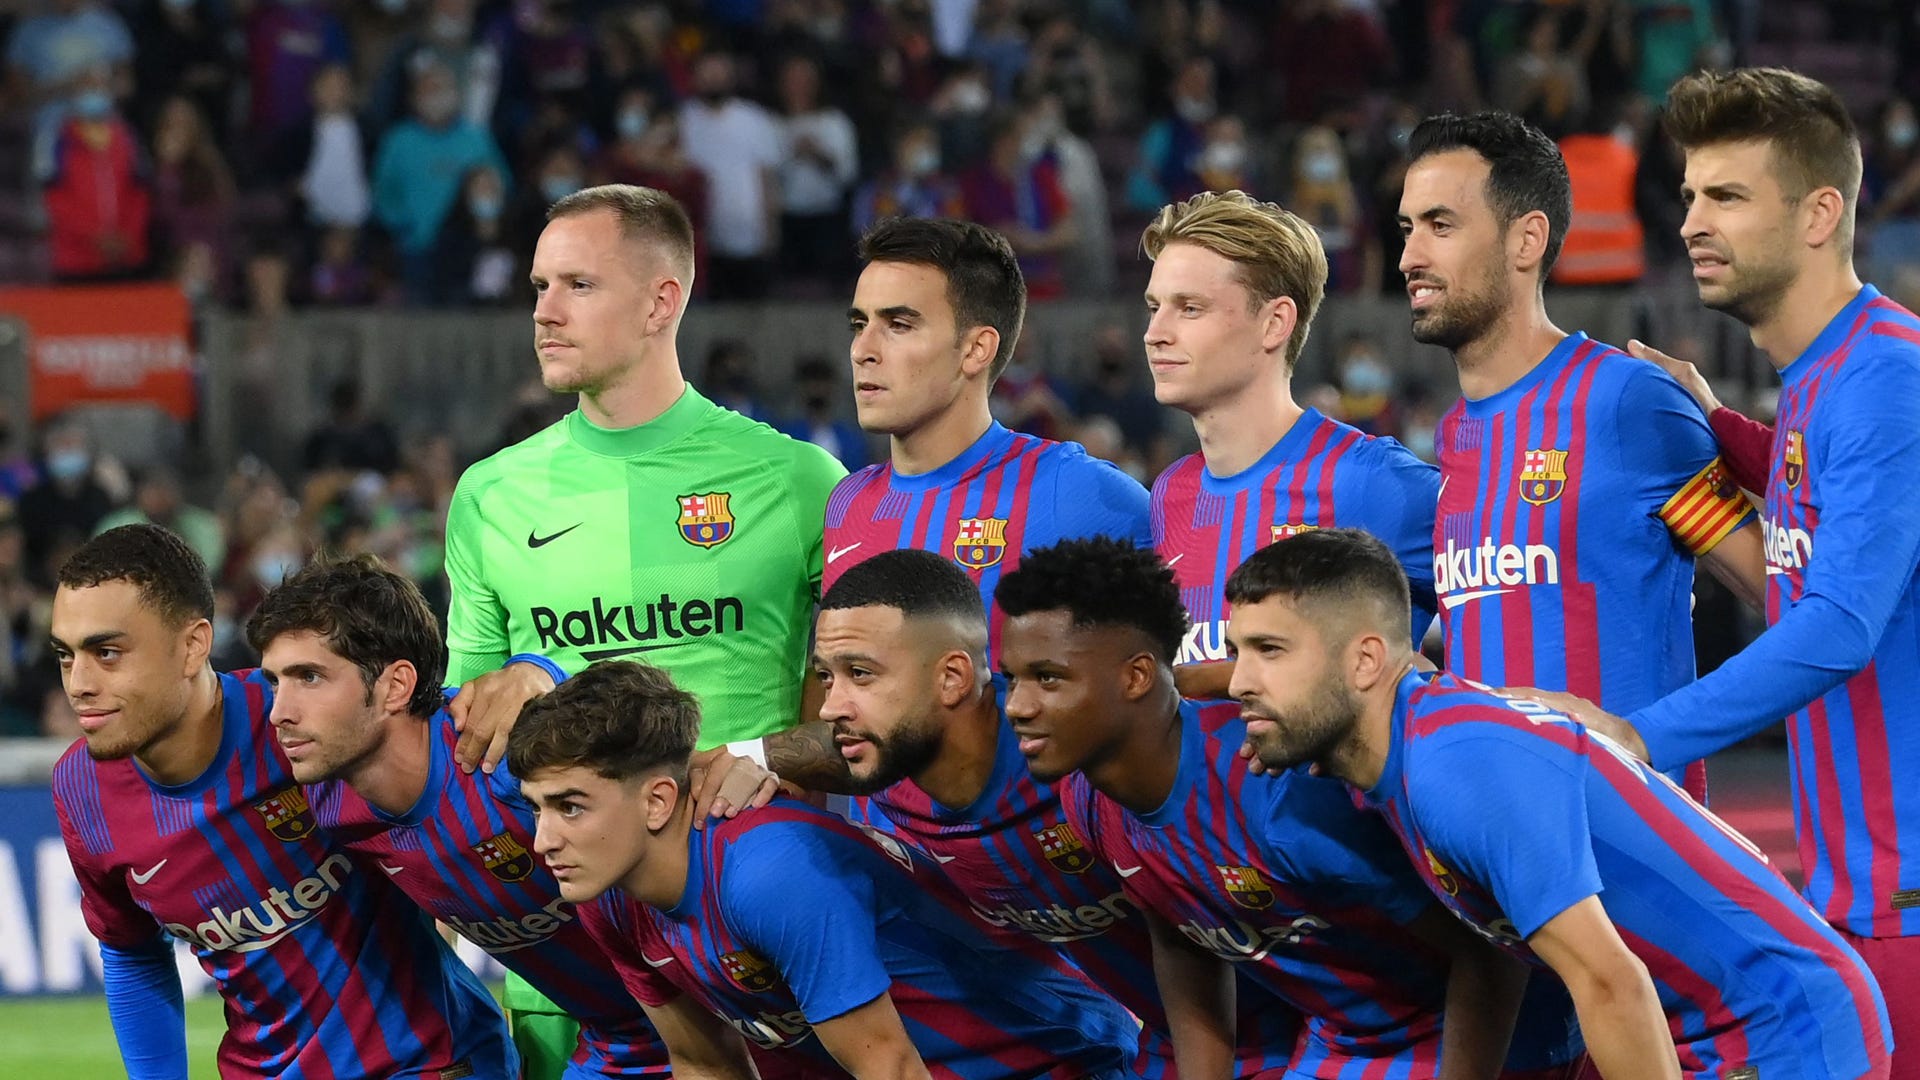 Fue el Barcelona alguna vez eliminado en fase de grupos de la Champions League? Cuándo ocurrió y precedentes | Goal.com Espana